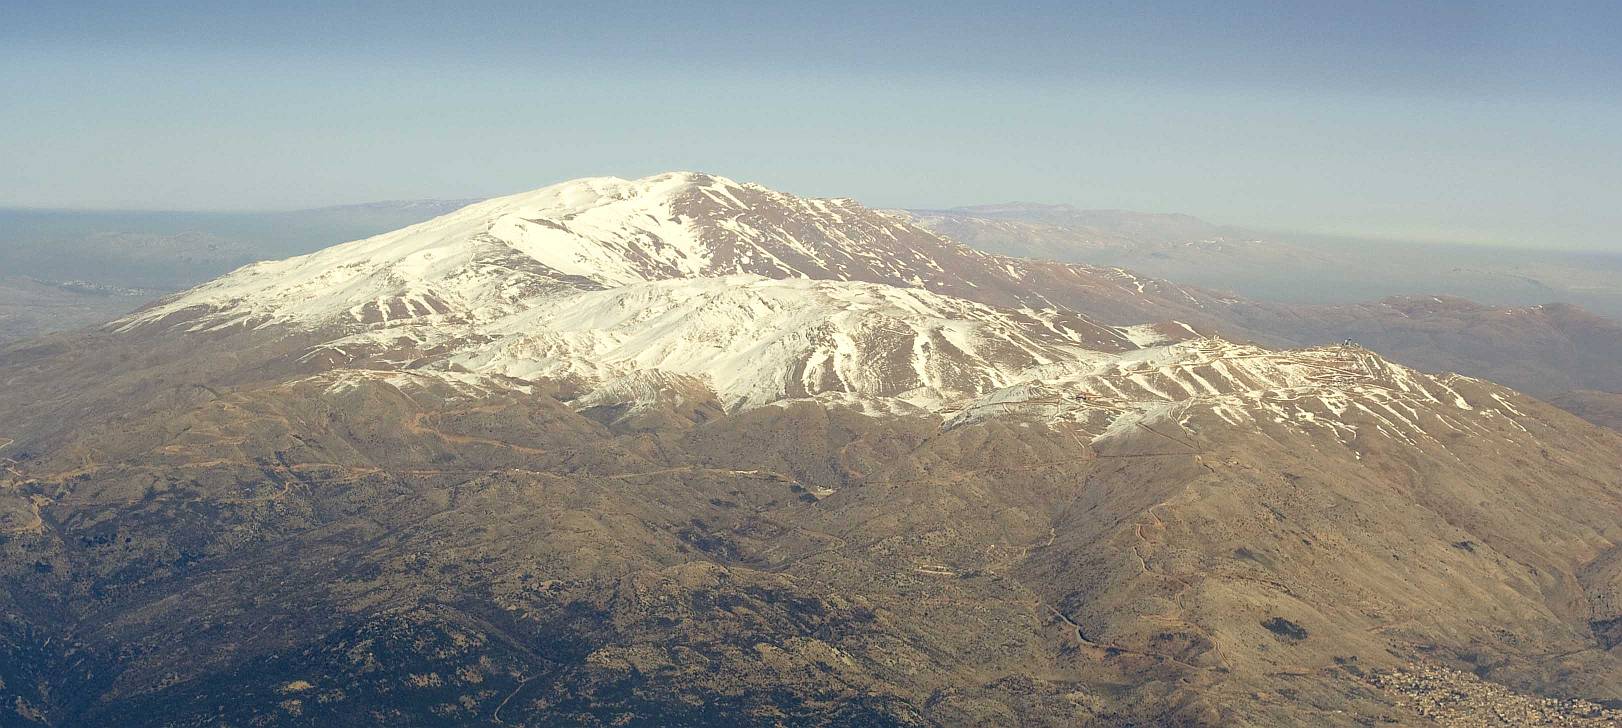 Полёт над Лыжным курортом горы Хермон, авиафотосъемка: горная вершина, покрытая снегом.